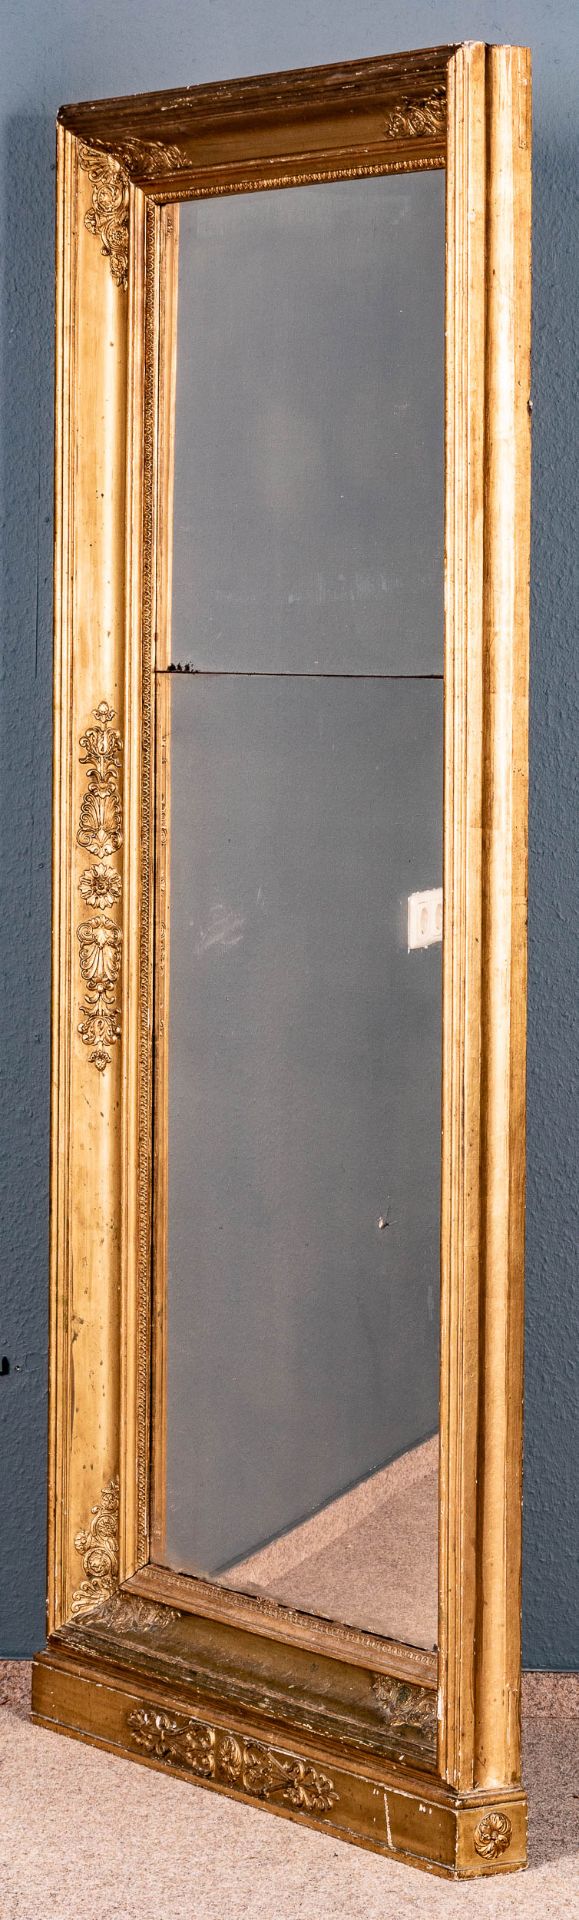 Großer Standspiegel. Empire/Klassizismus um 1800. Holz vergoldet, originales zweigeteiltes Spiegelg - Bild 6 aus 8